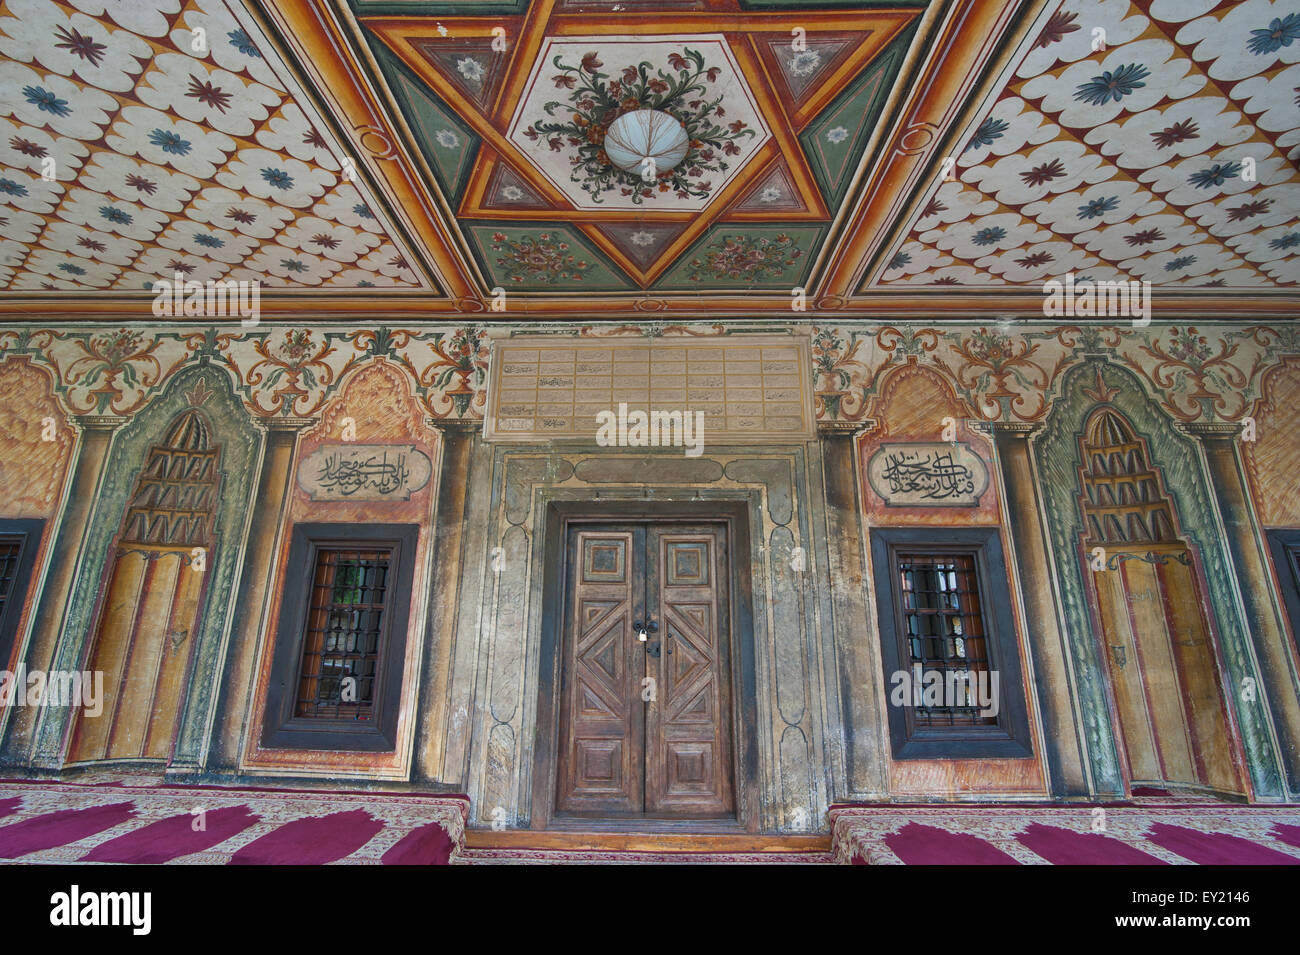 Reich verzierte Wände in der gemalten Moschee Sarana Dzamija, Tetovo, Mazedonien Stockfoto